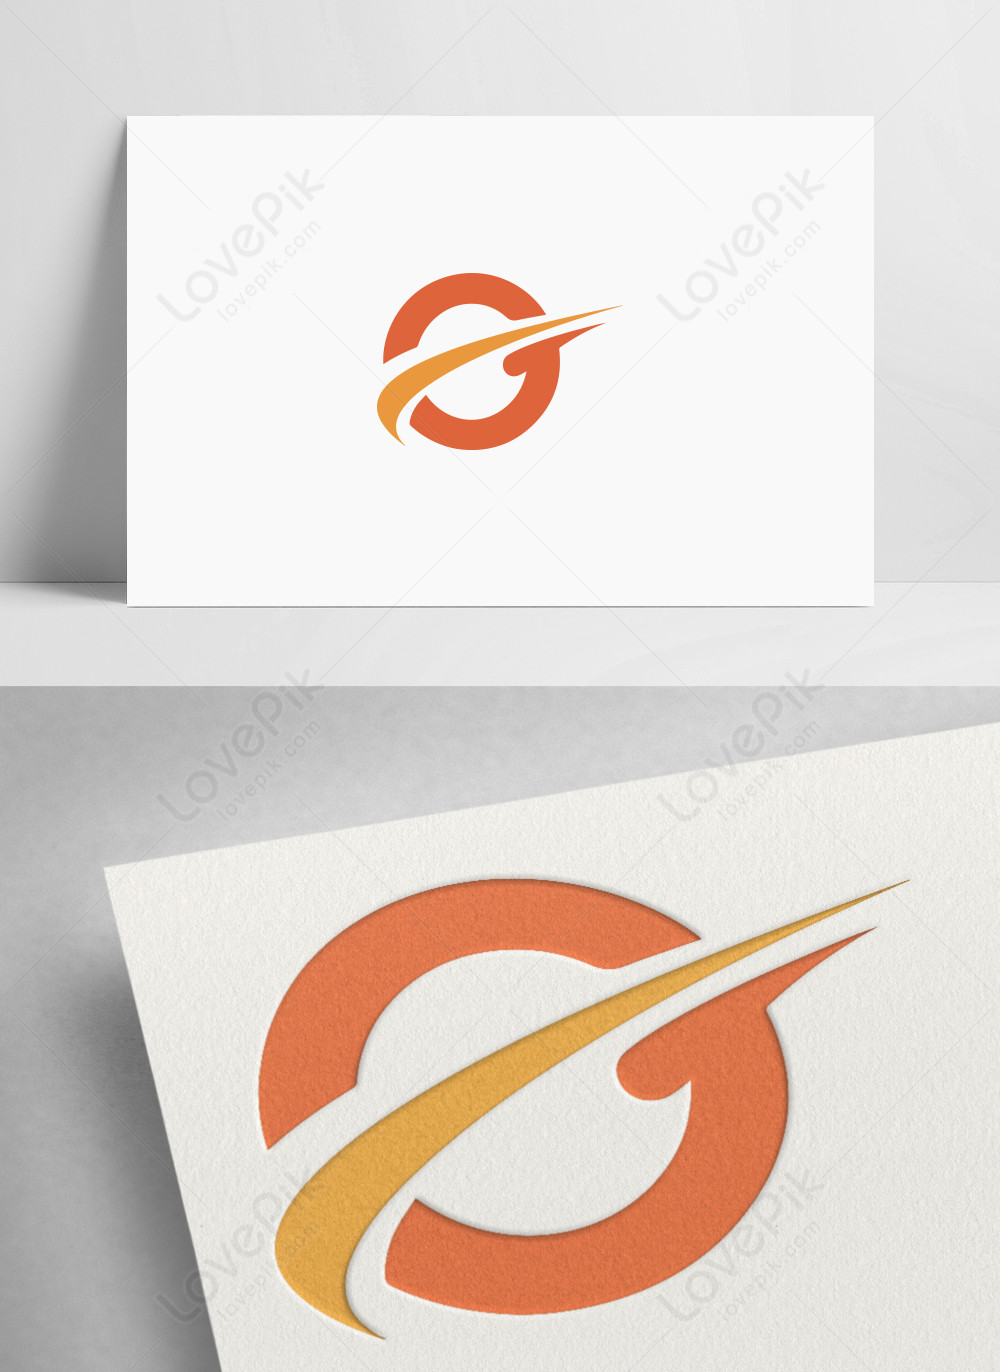 Leaf letter o logo design inspiration icon Vector Image